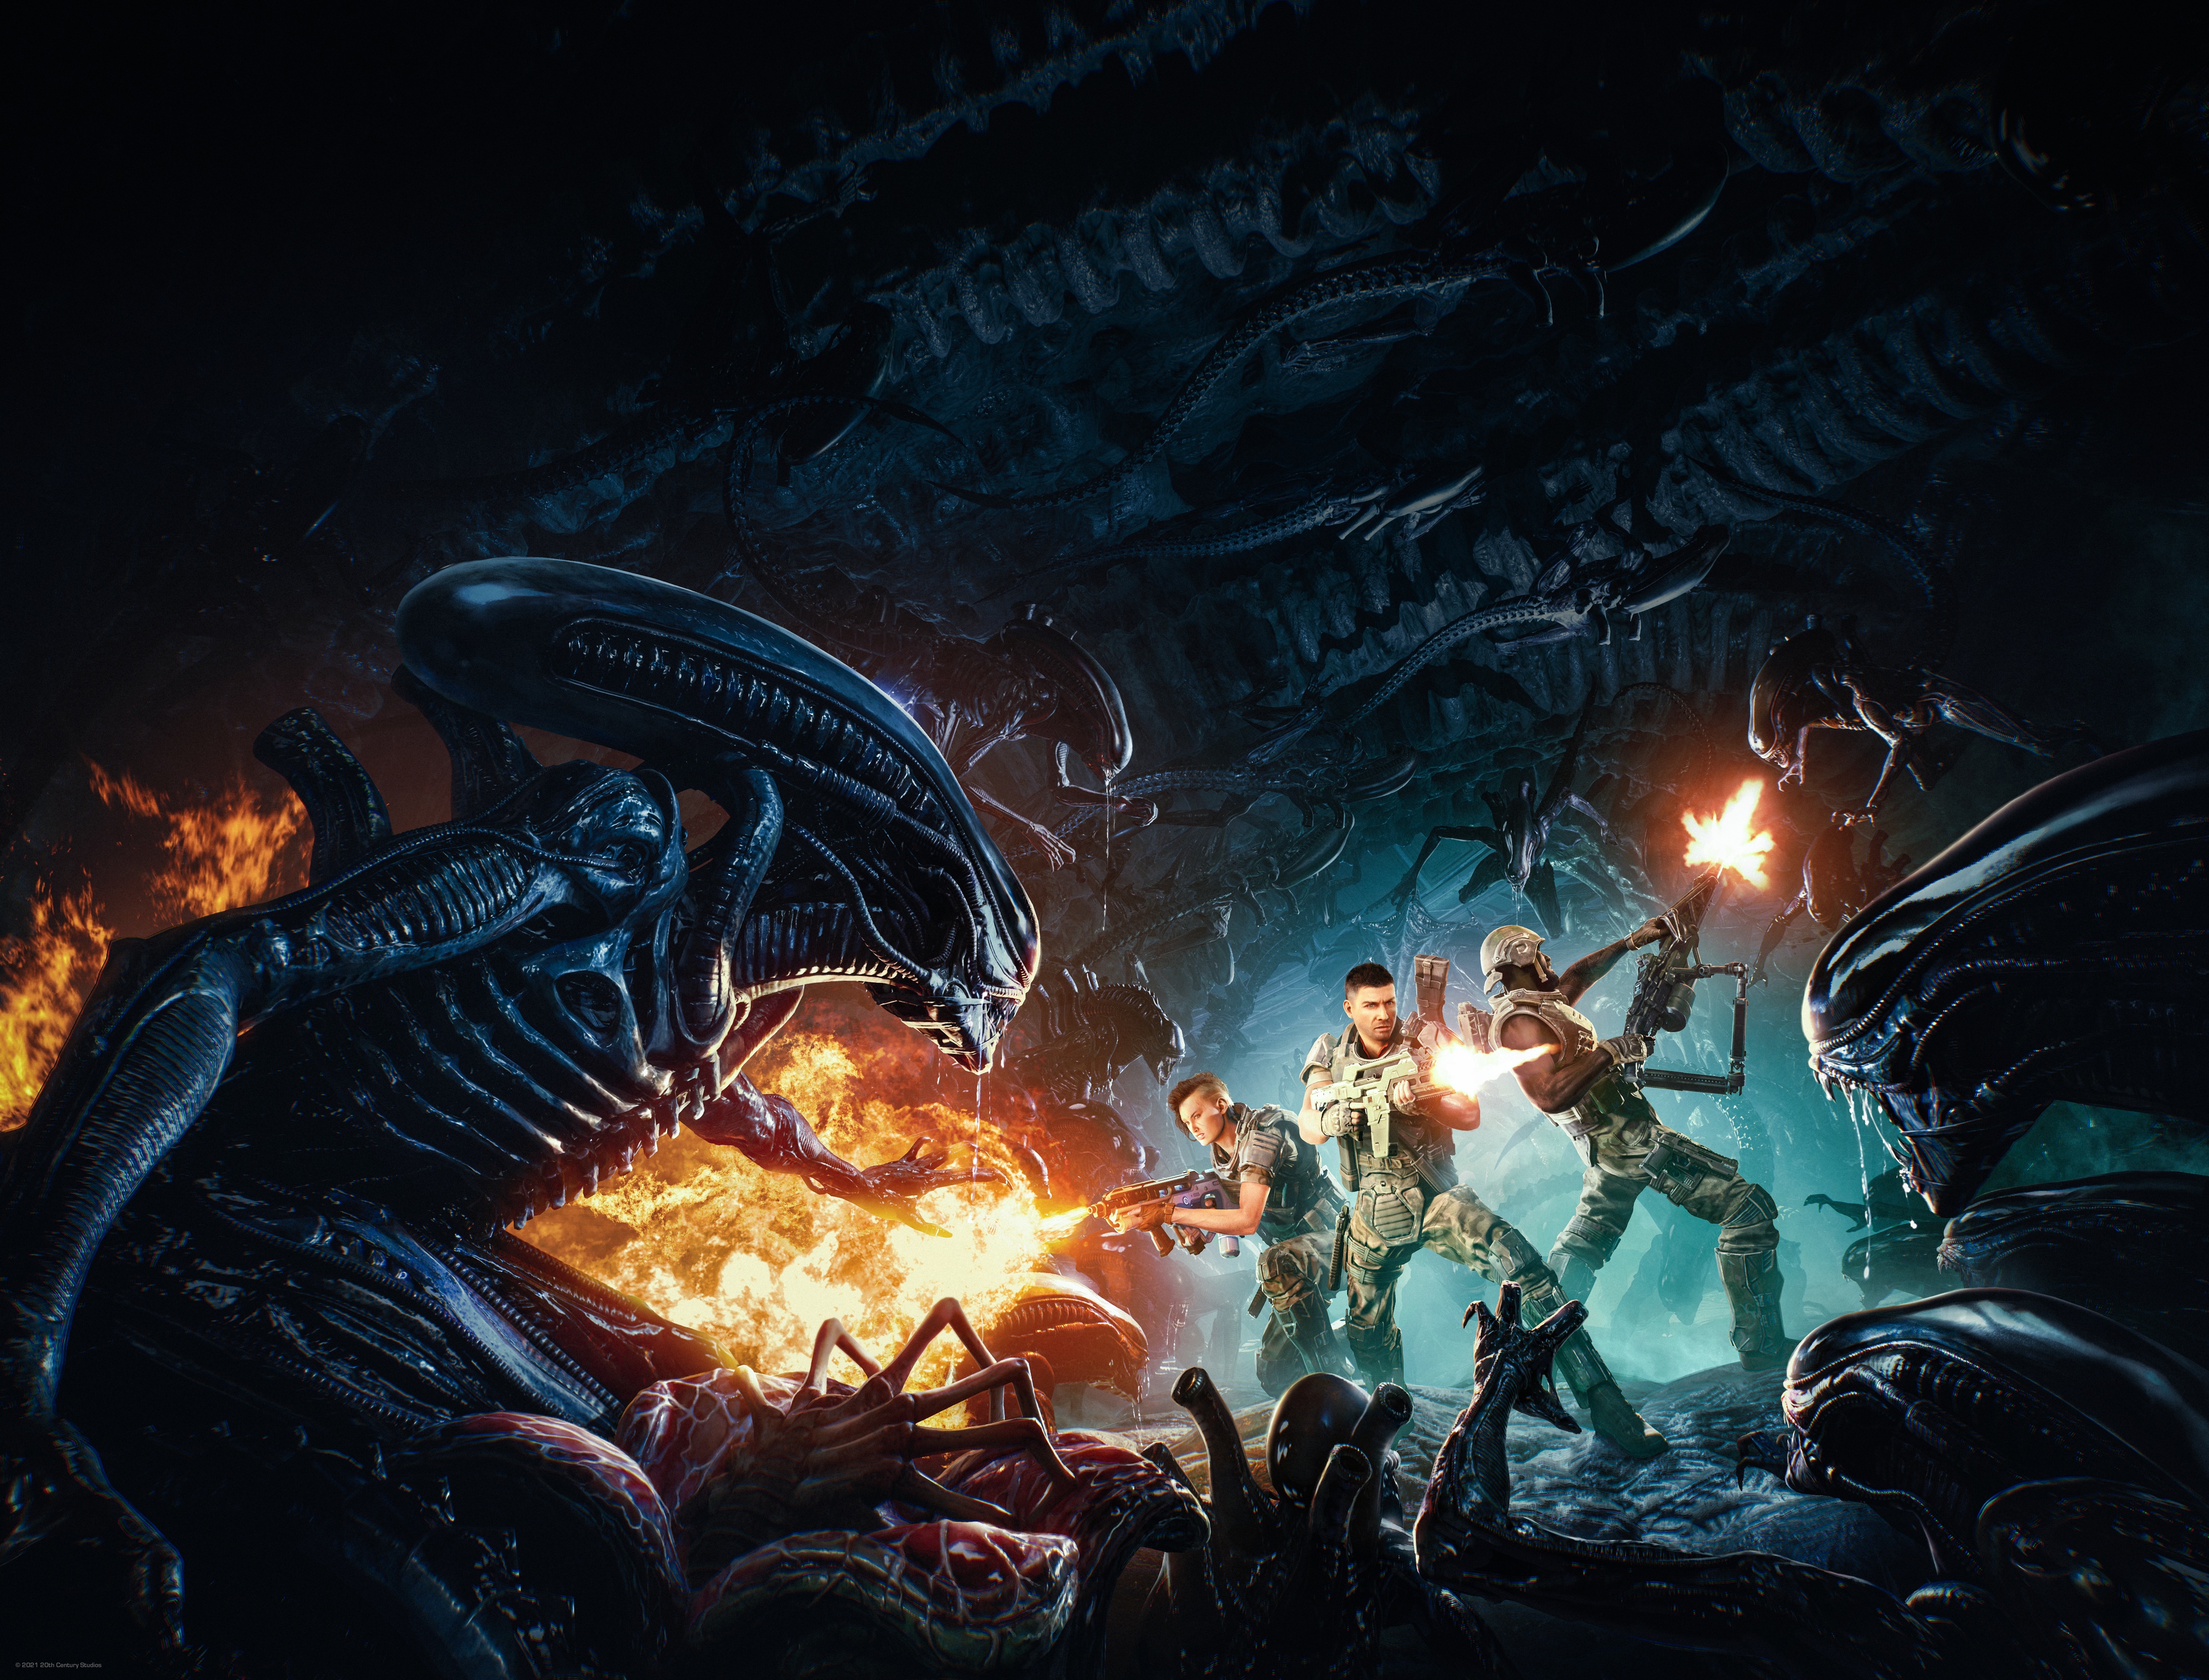 Aliens Versus Predator 2 - Metacritic